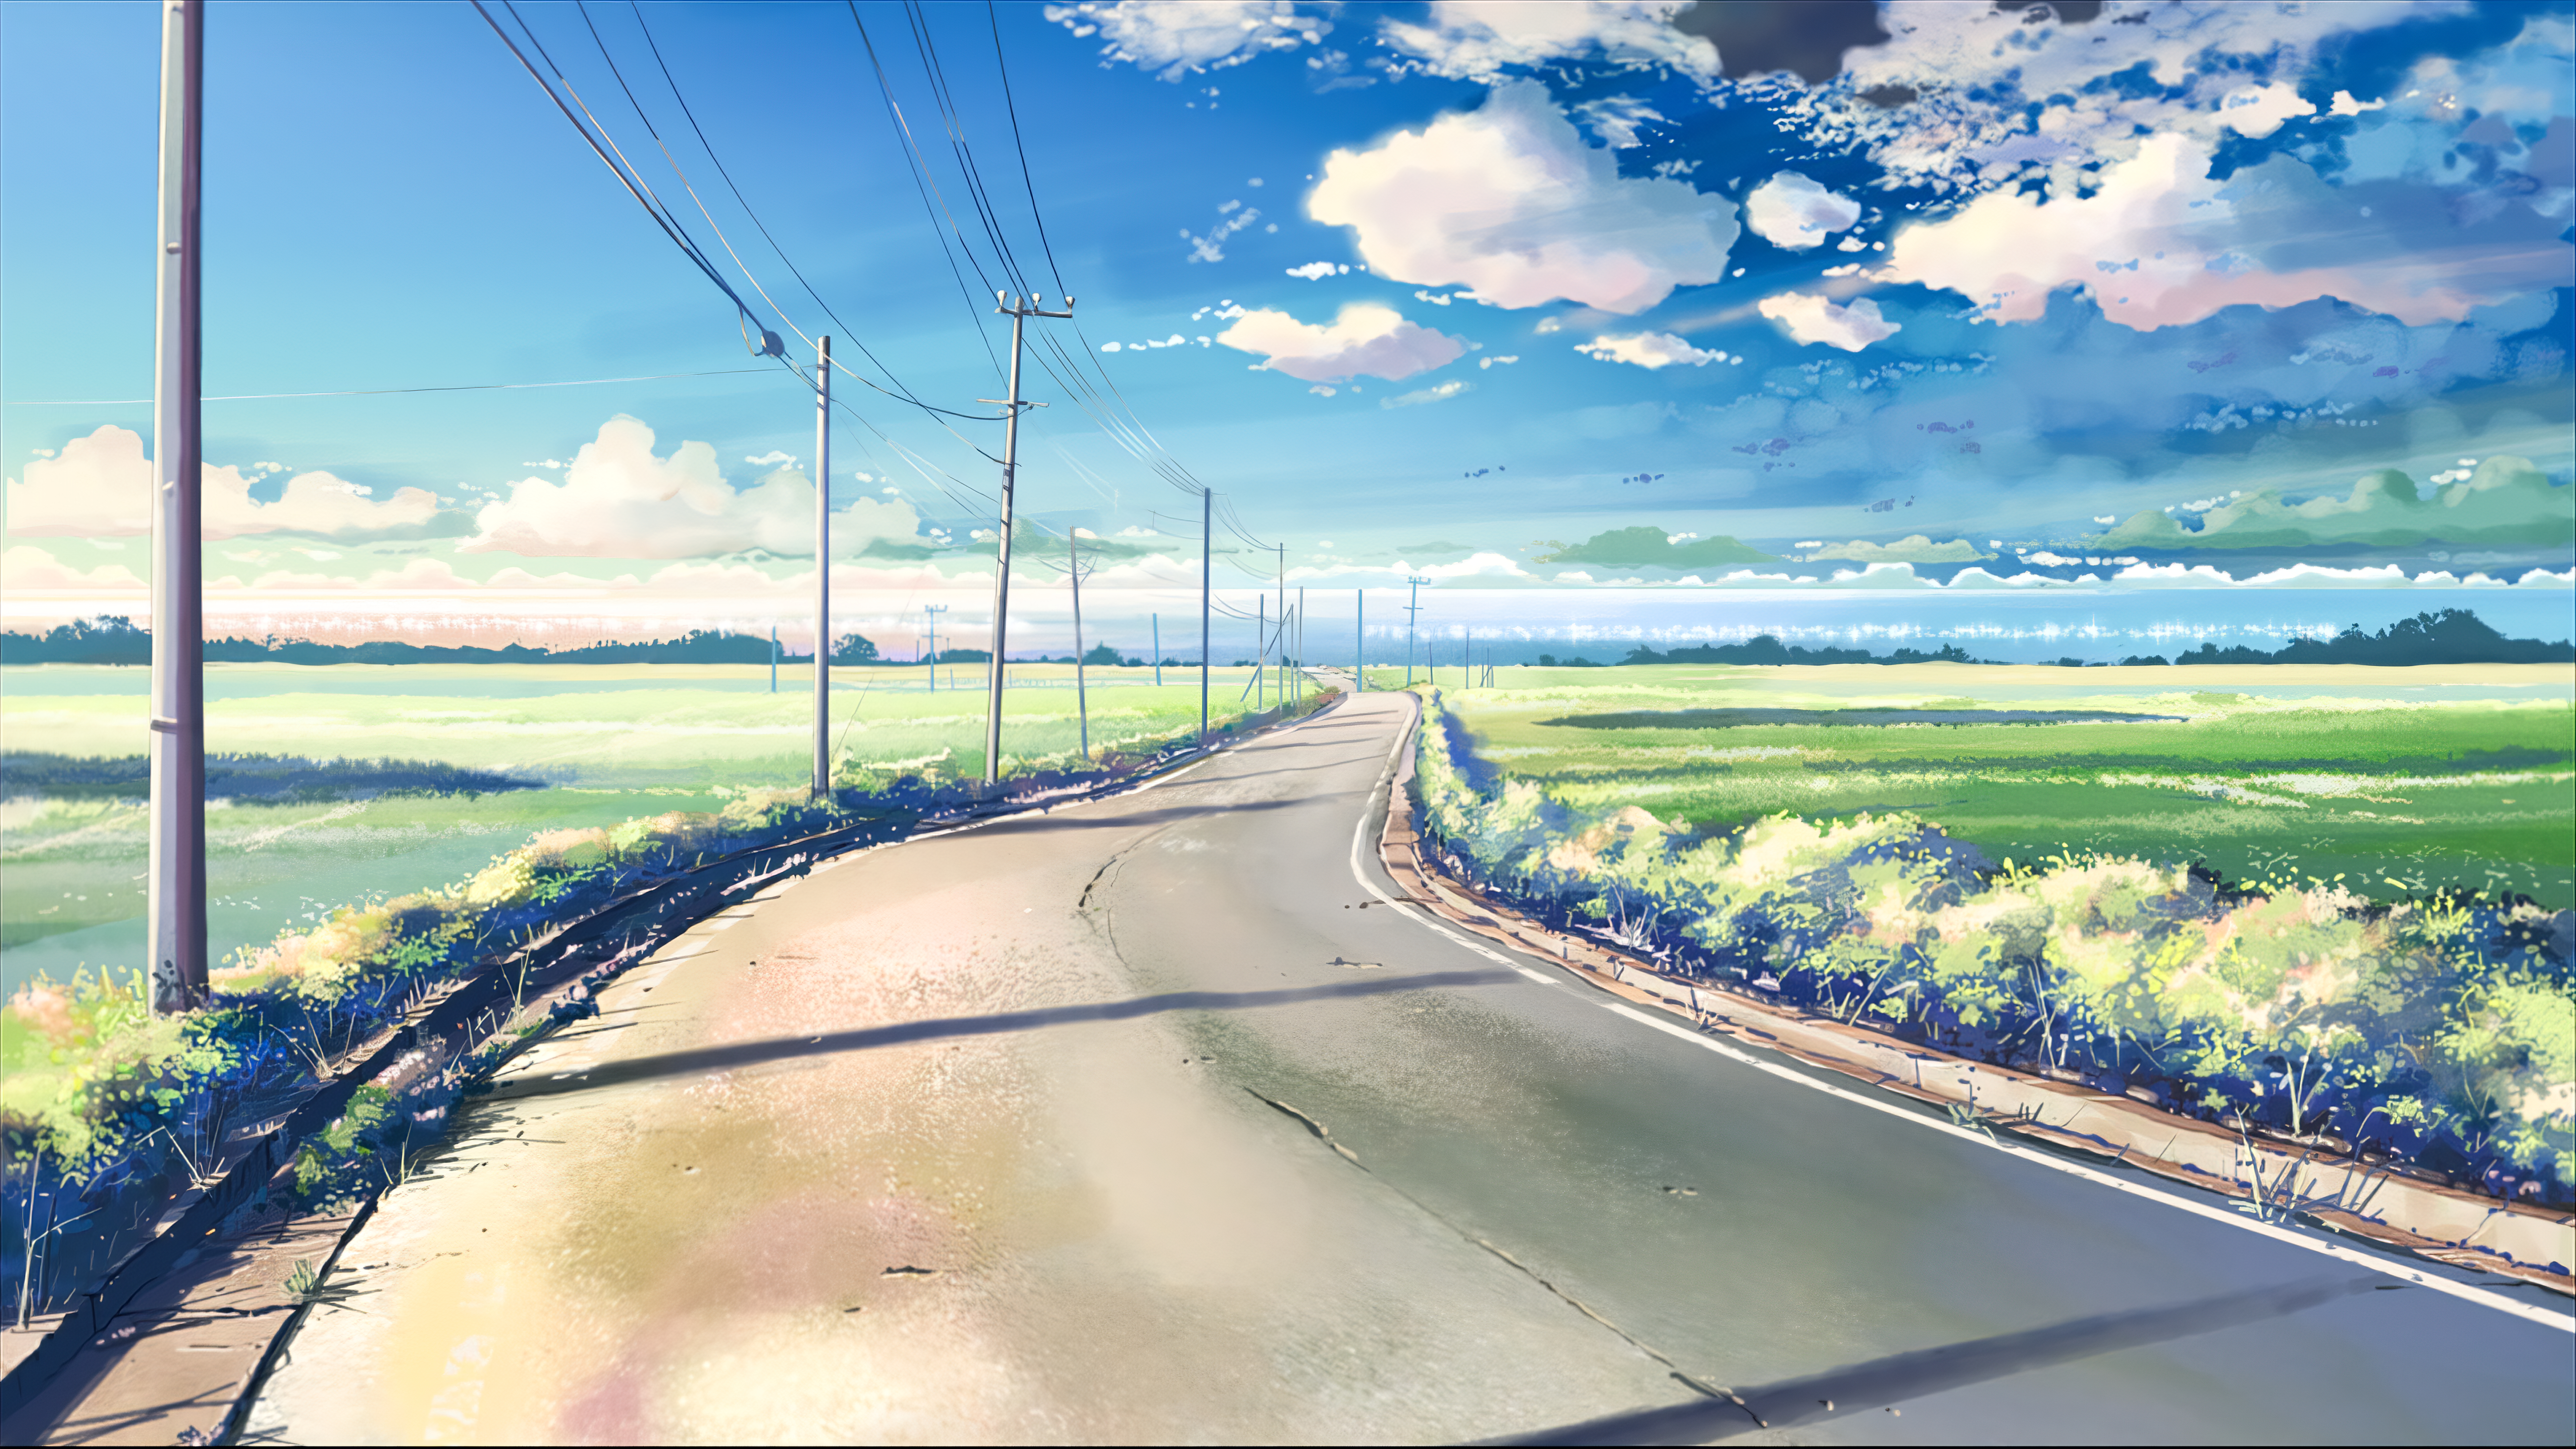 HD desktop wallpaper: Anime, Landscape, Sky, Cloud, 5 Centimeters Per  Second download free picture #1532562